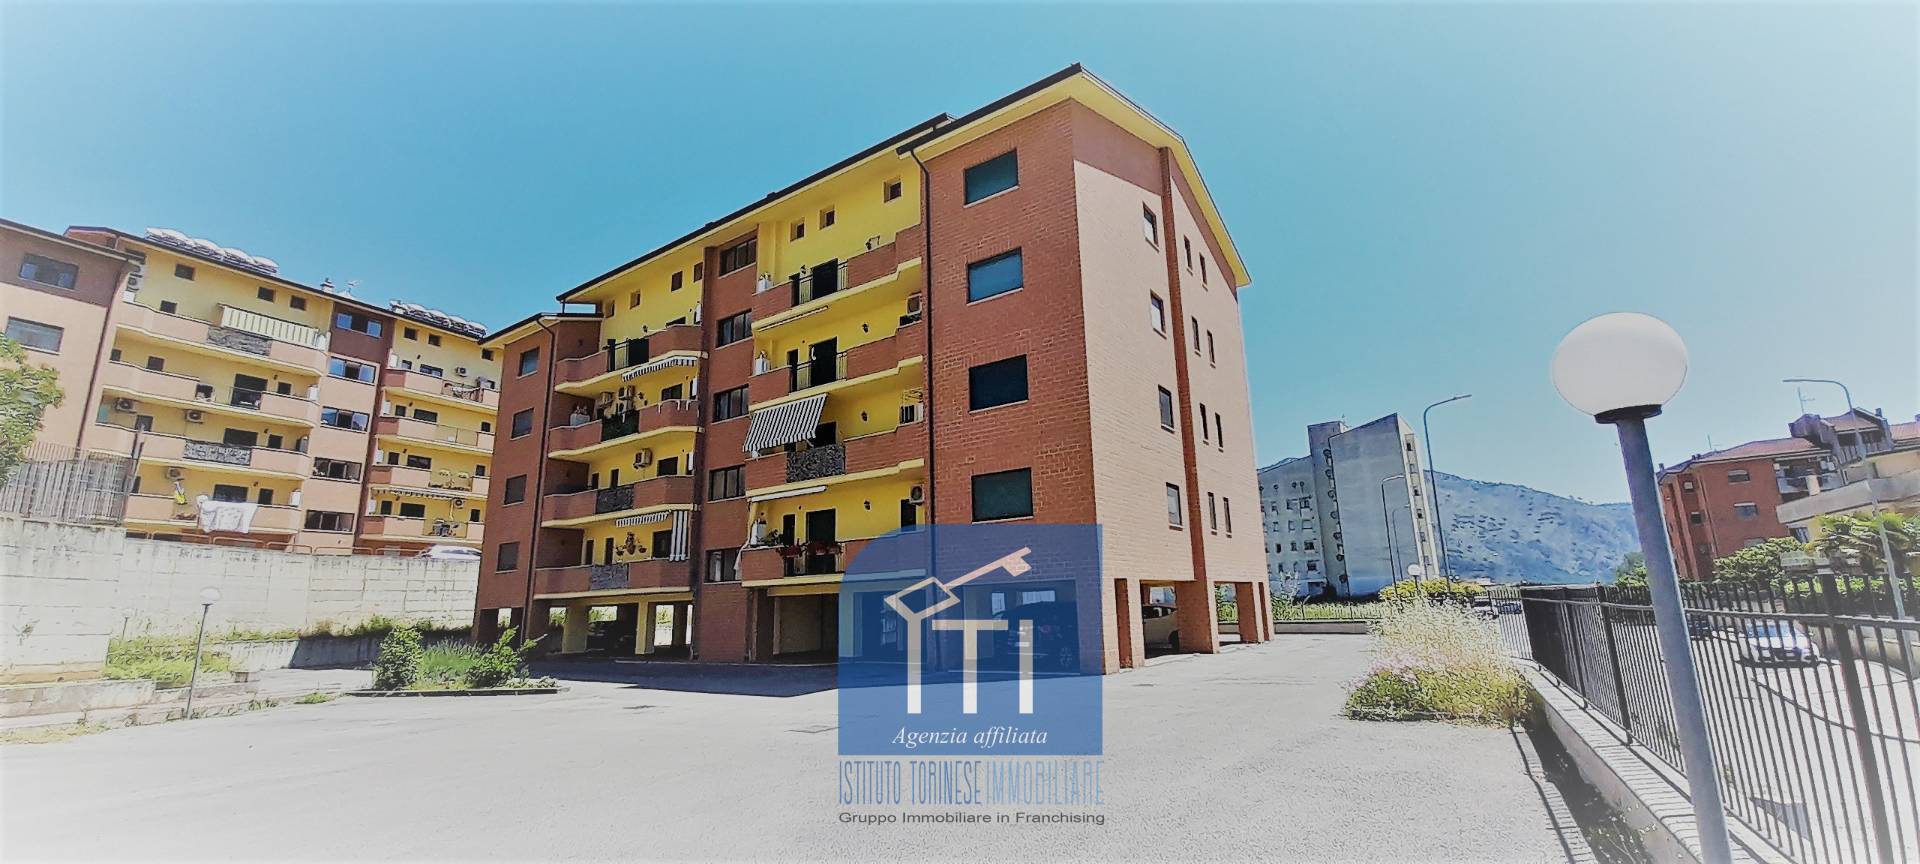 Appartamento in vendita a Piedimonte San Germano, 7 locali, prezzo € 119.000 | CambioCasa.it